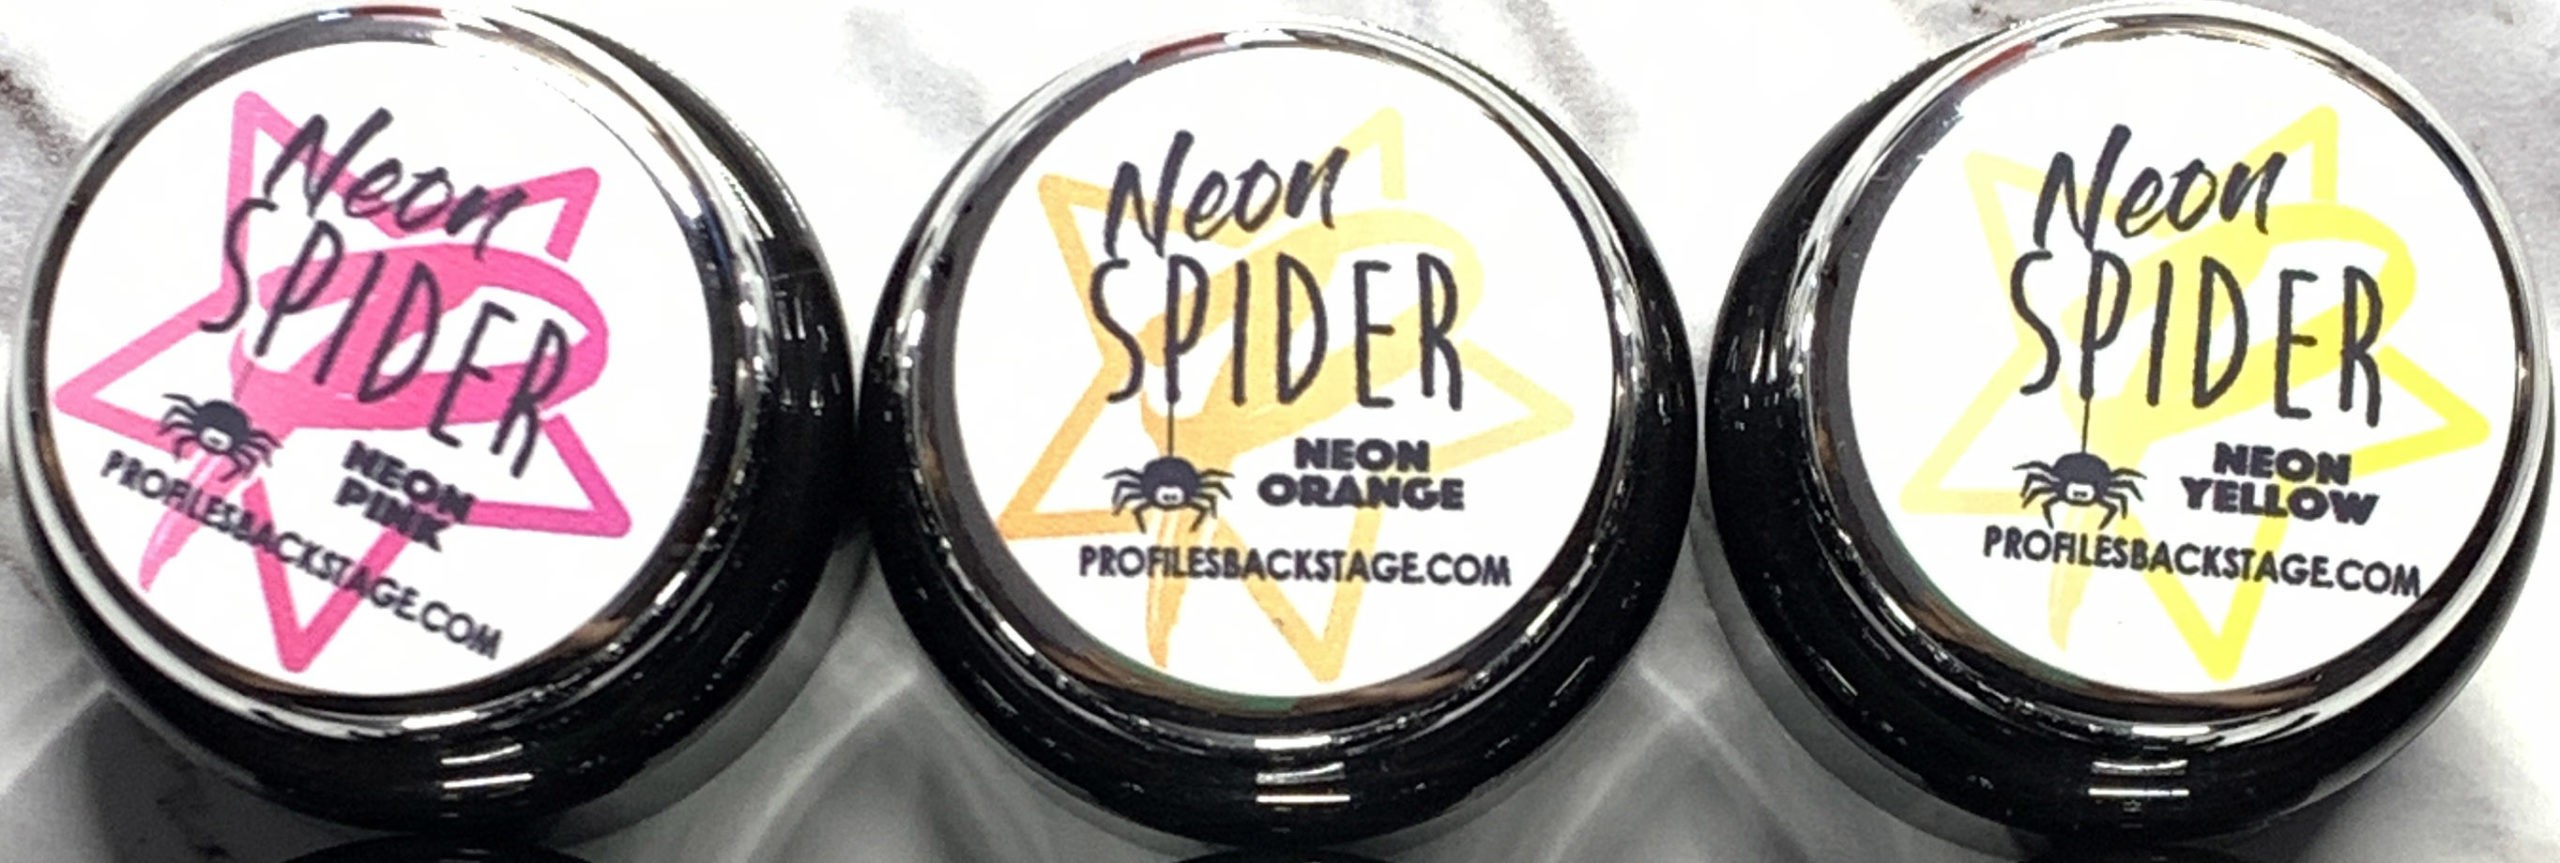 Spider Gel NEON!  Profiles Backstage